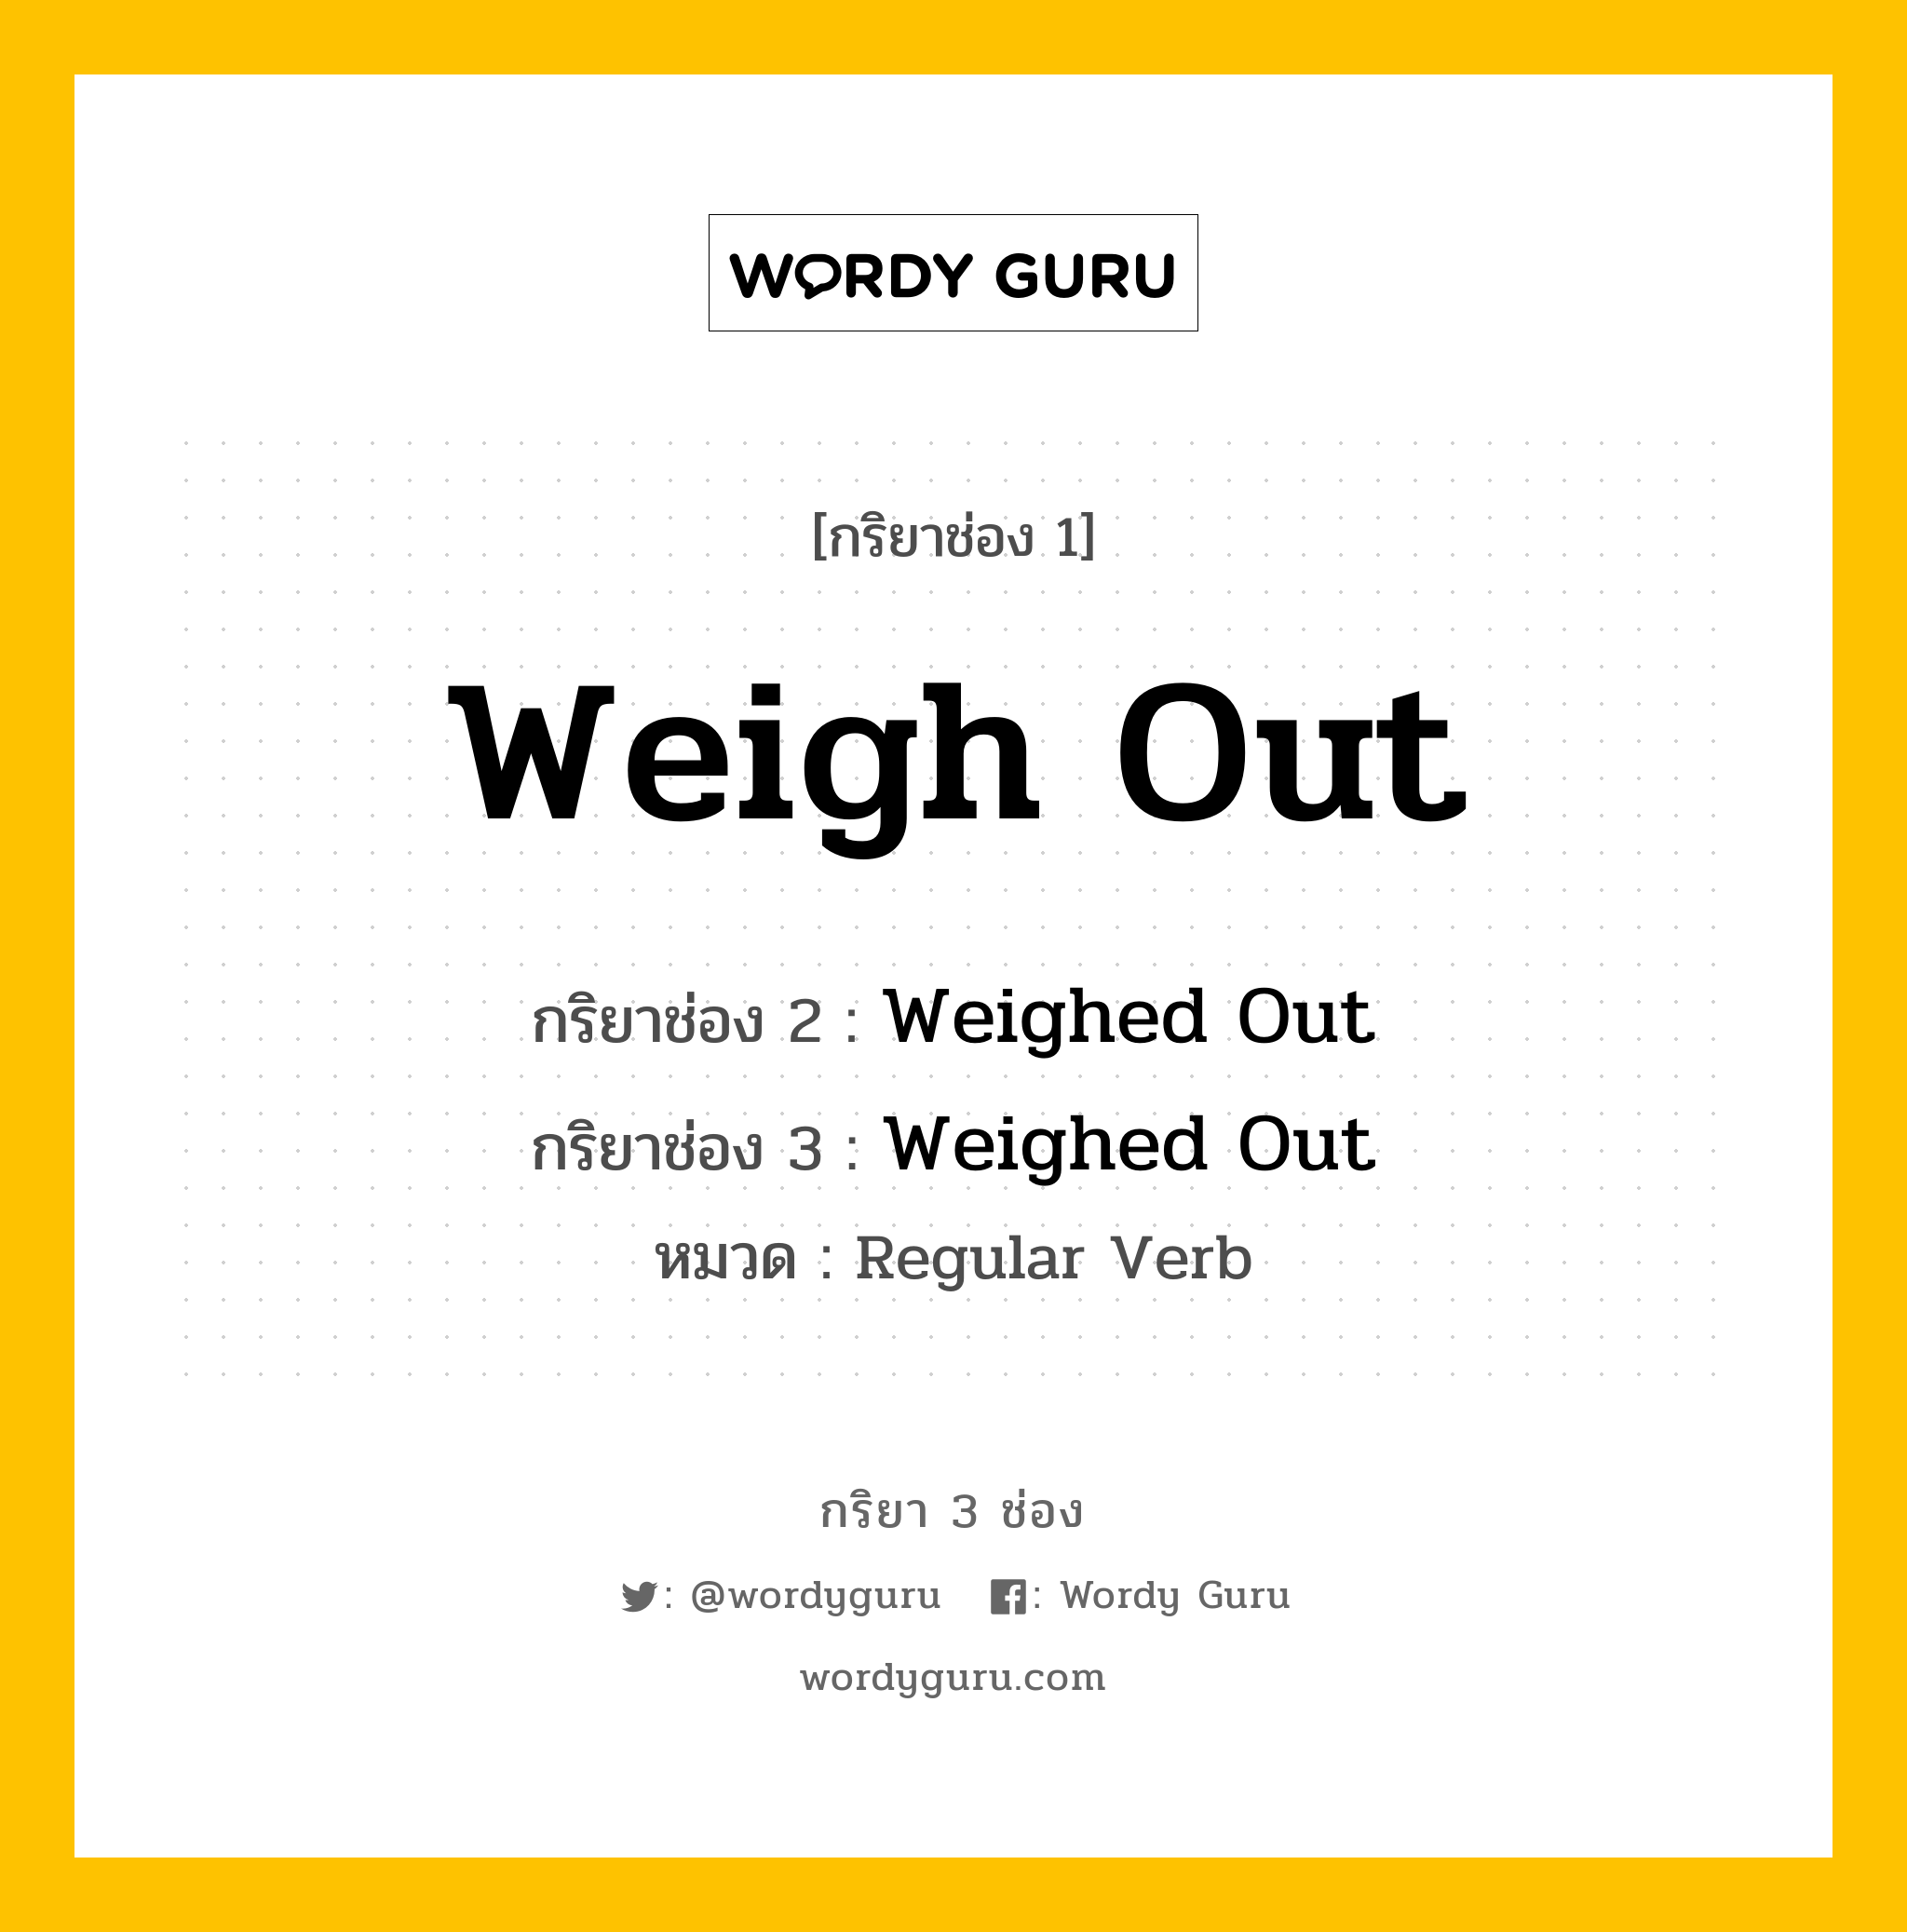 กริยา 3 ช่อง: Weigh Out ช่อง 2 Weigh Out ช่อง 3 คืออะไร, กริยาช่อง 1 Weigh Out กริยาช่อง 2 Weighed Out กริยาช่อง 3 Weighed Out หมวด Regular Verb หมวด Regular Verb